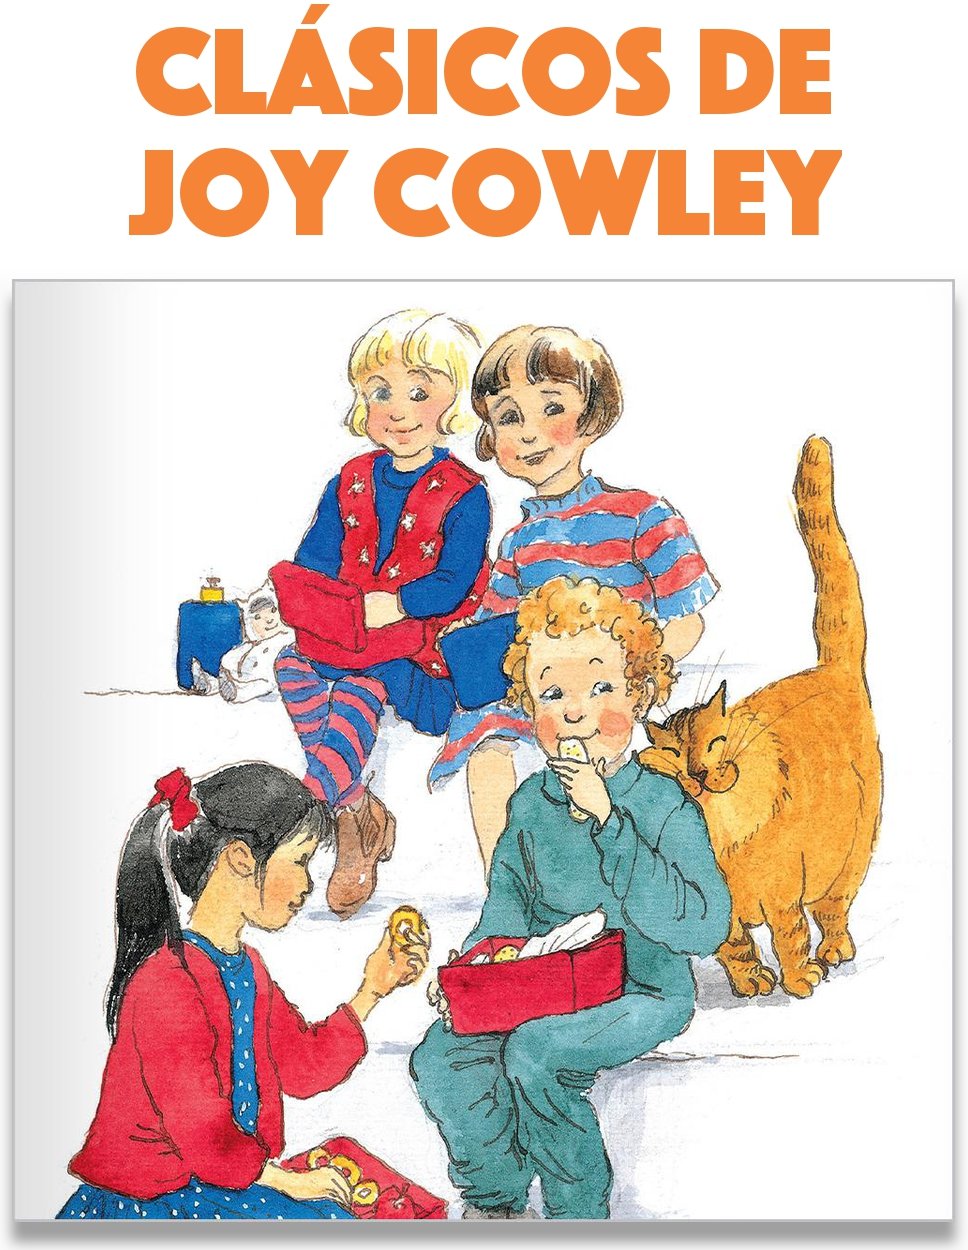 Clásicos de Joy Cowley